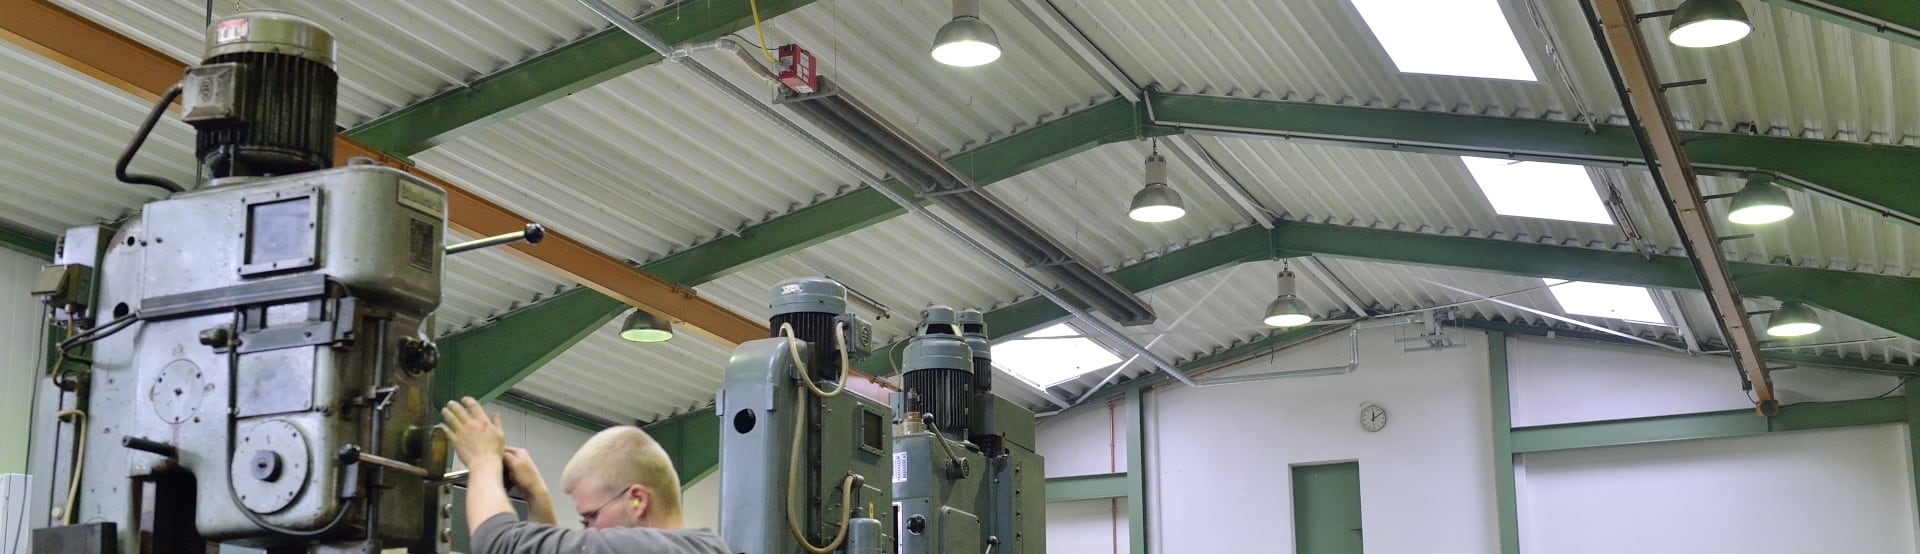 Ein langer Dunkelstrahler von Schwank hängt unter der Decke einer Industriehalle.